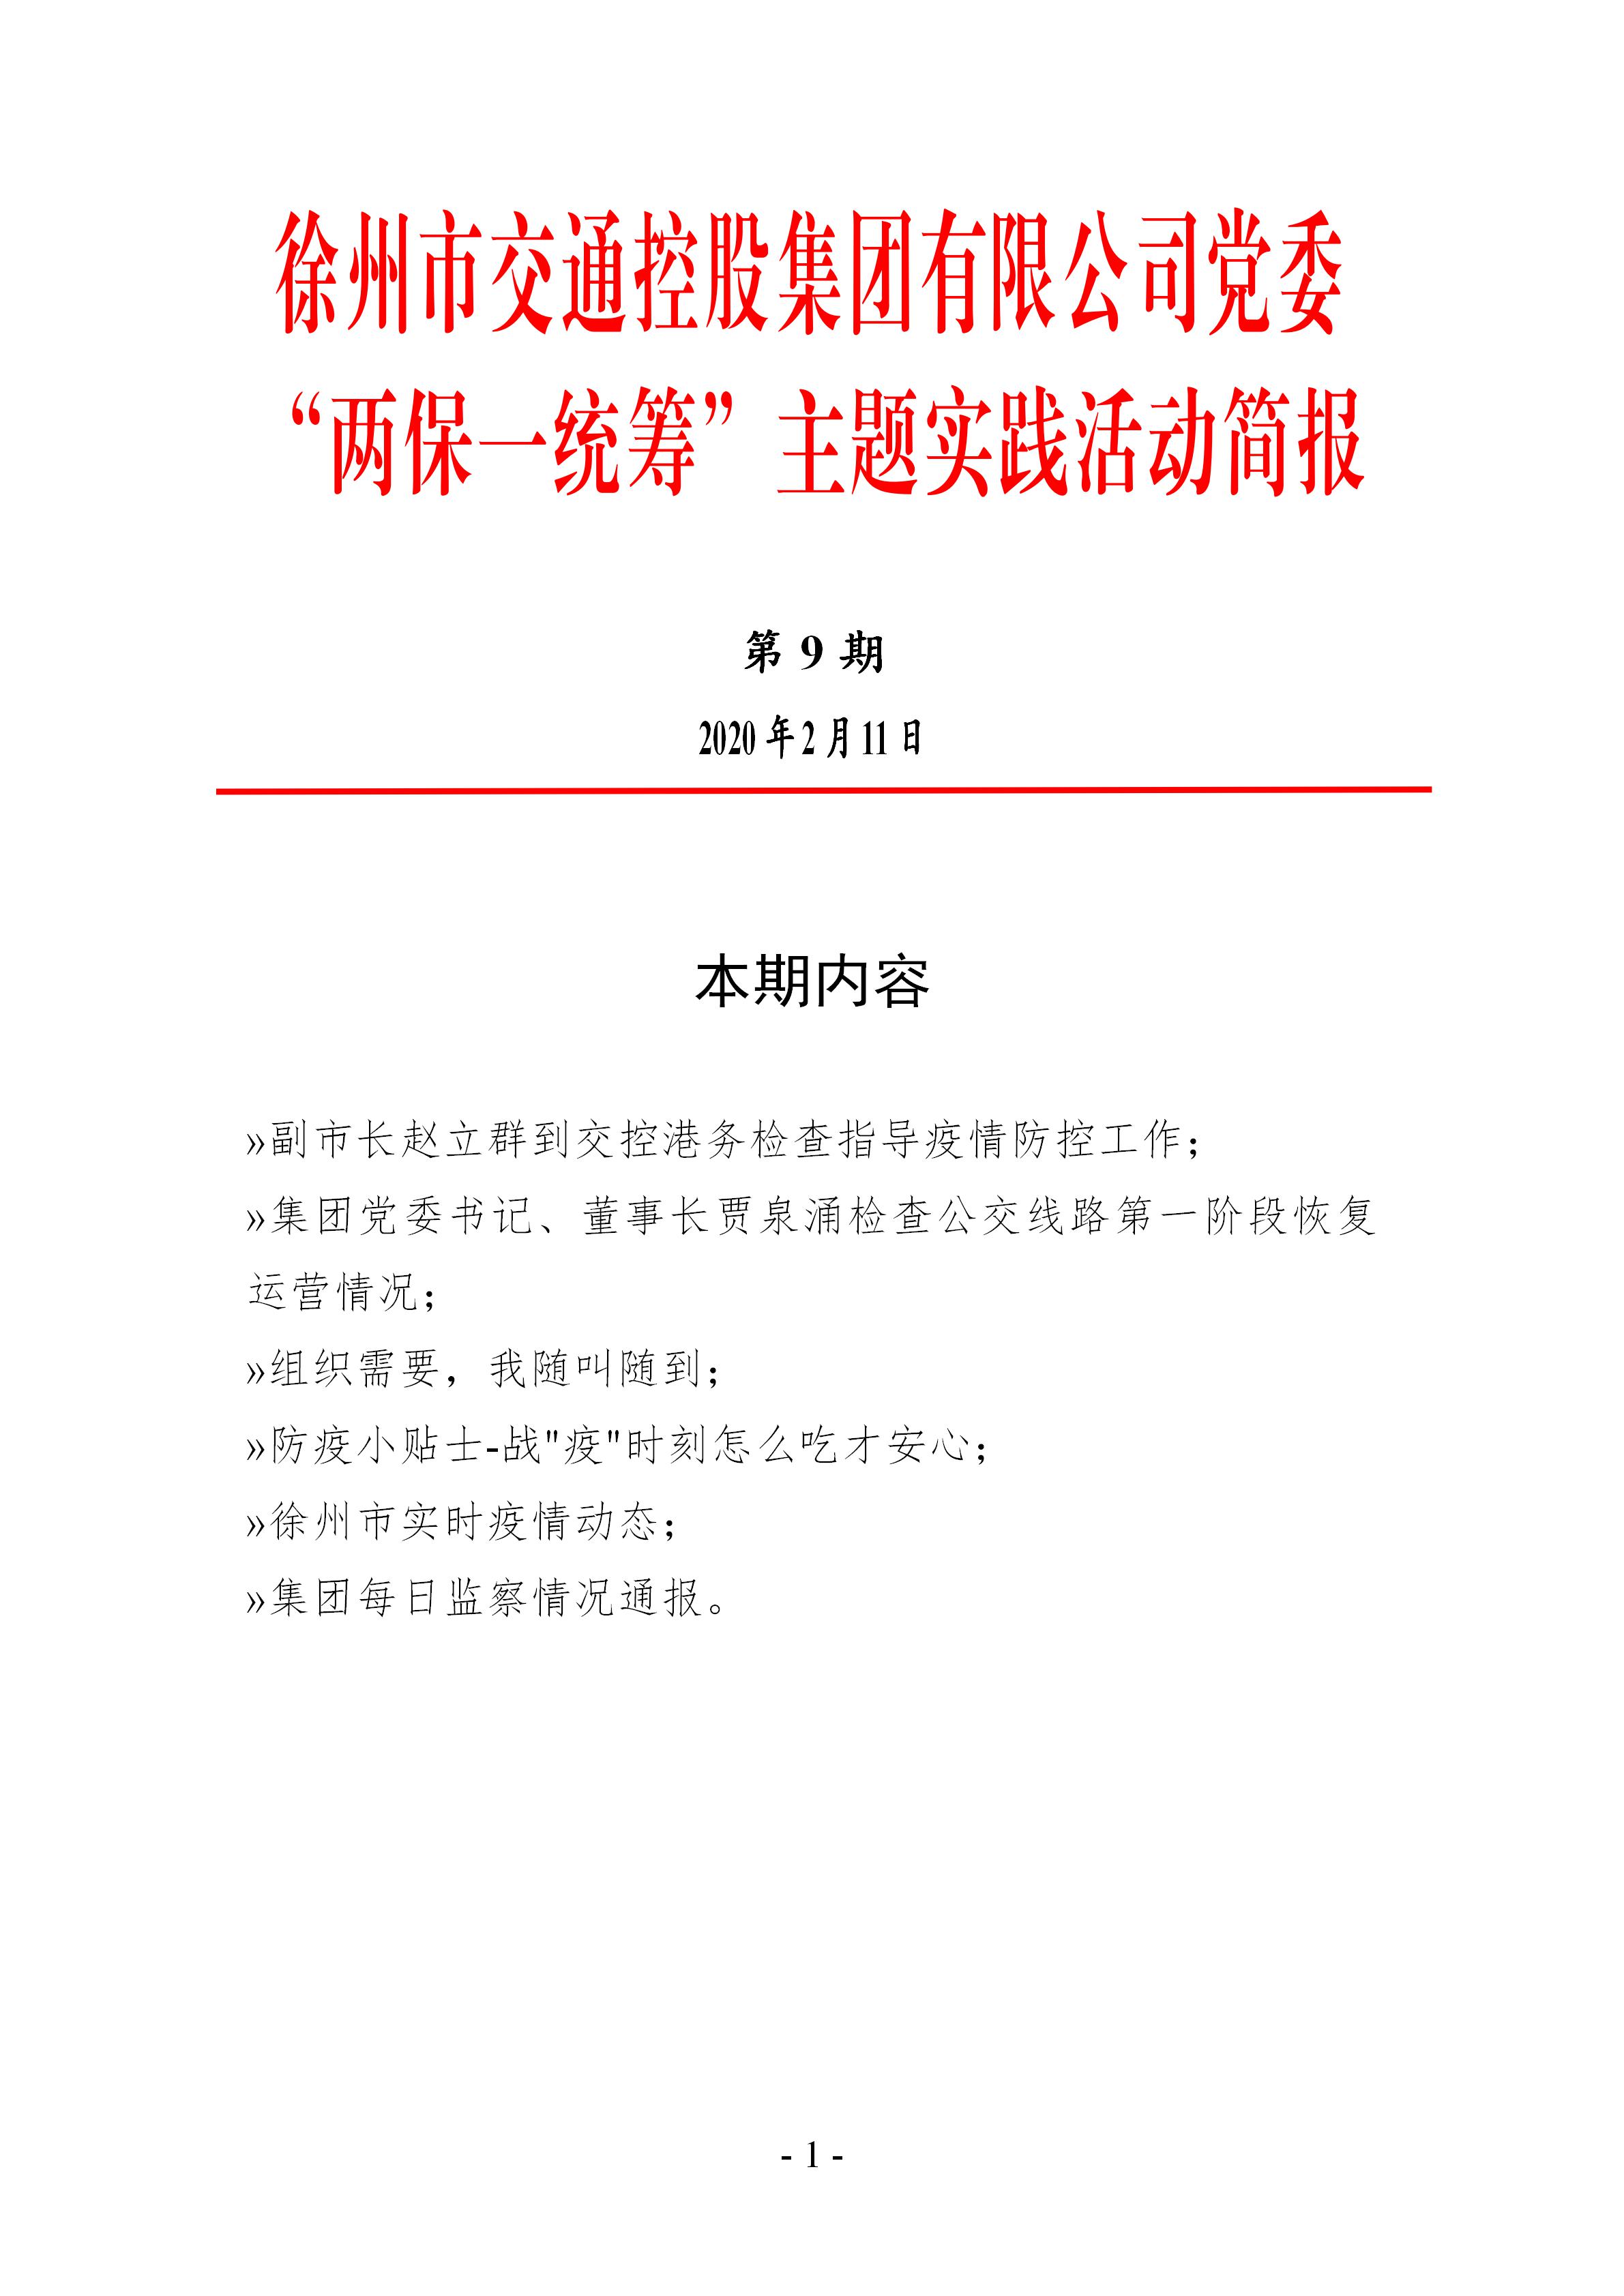 （第九期2.11）徐州市交通控股集团“两保一统筹”主题实践活动简报